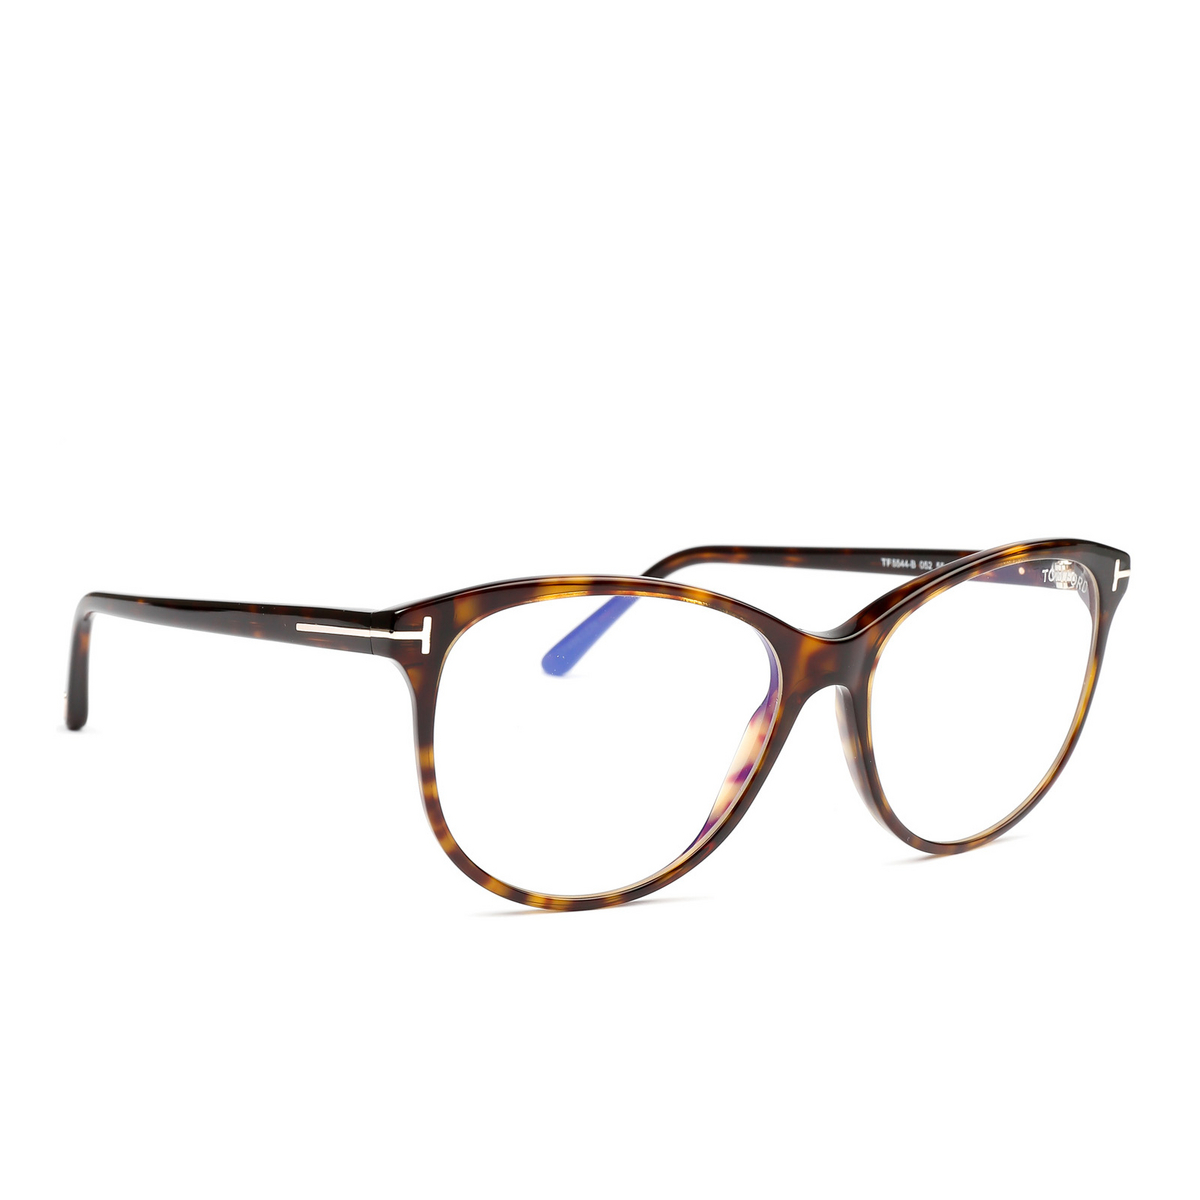 Tom Ford® Cat-eye Eyeglasses: FT5544-B color 052 - three-quarters view.